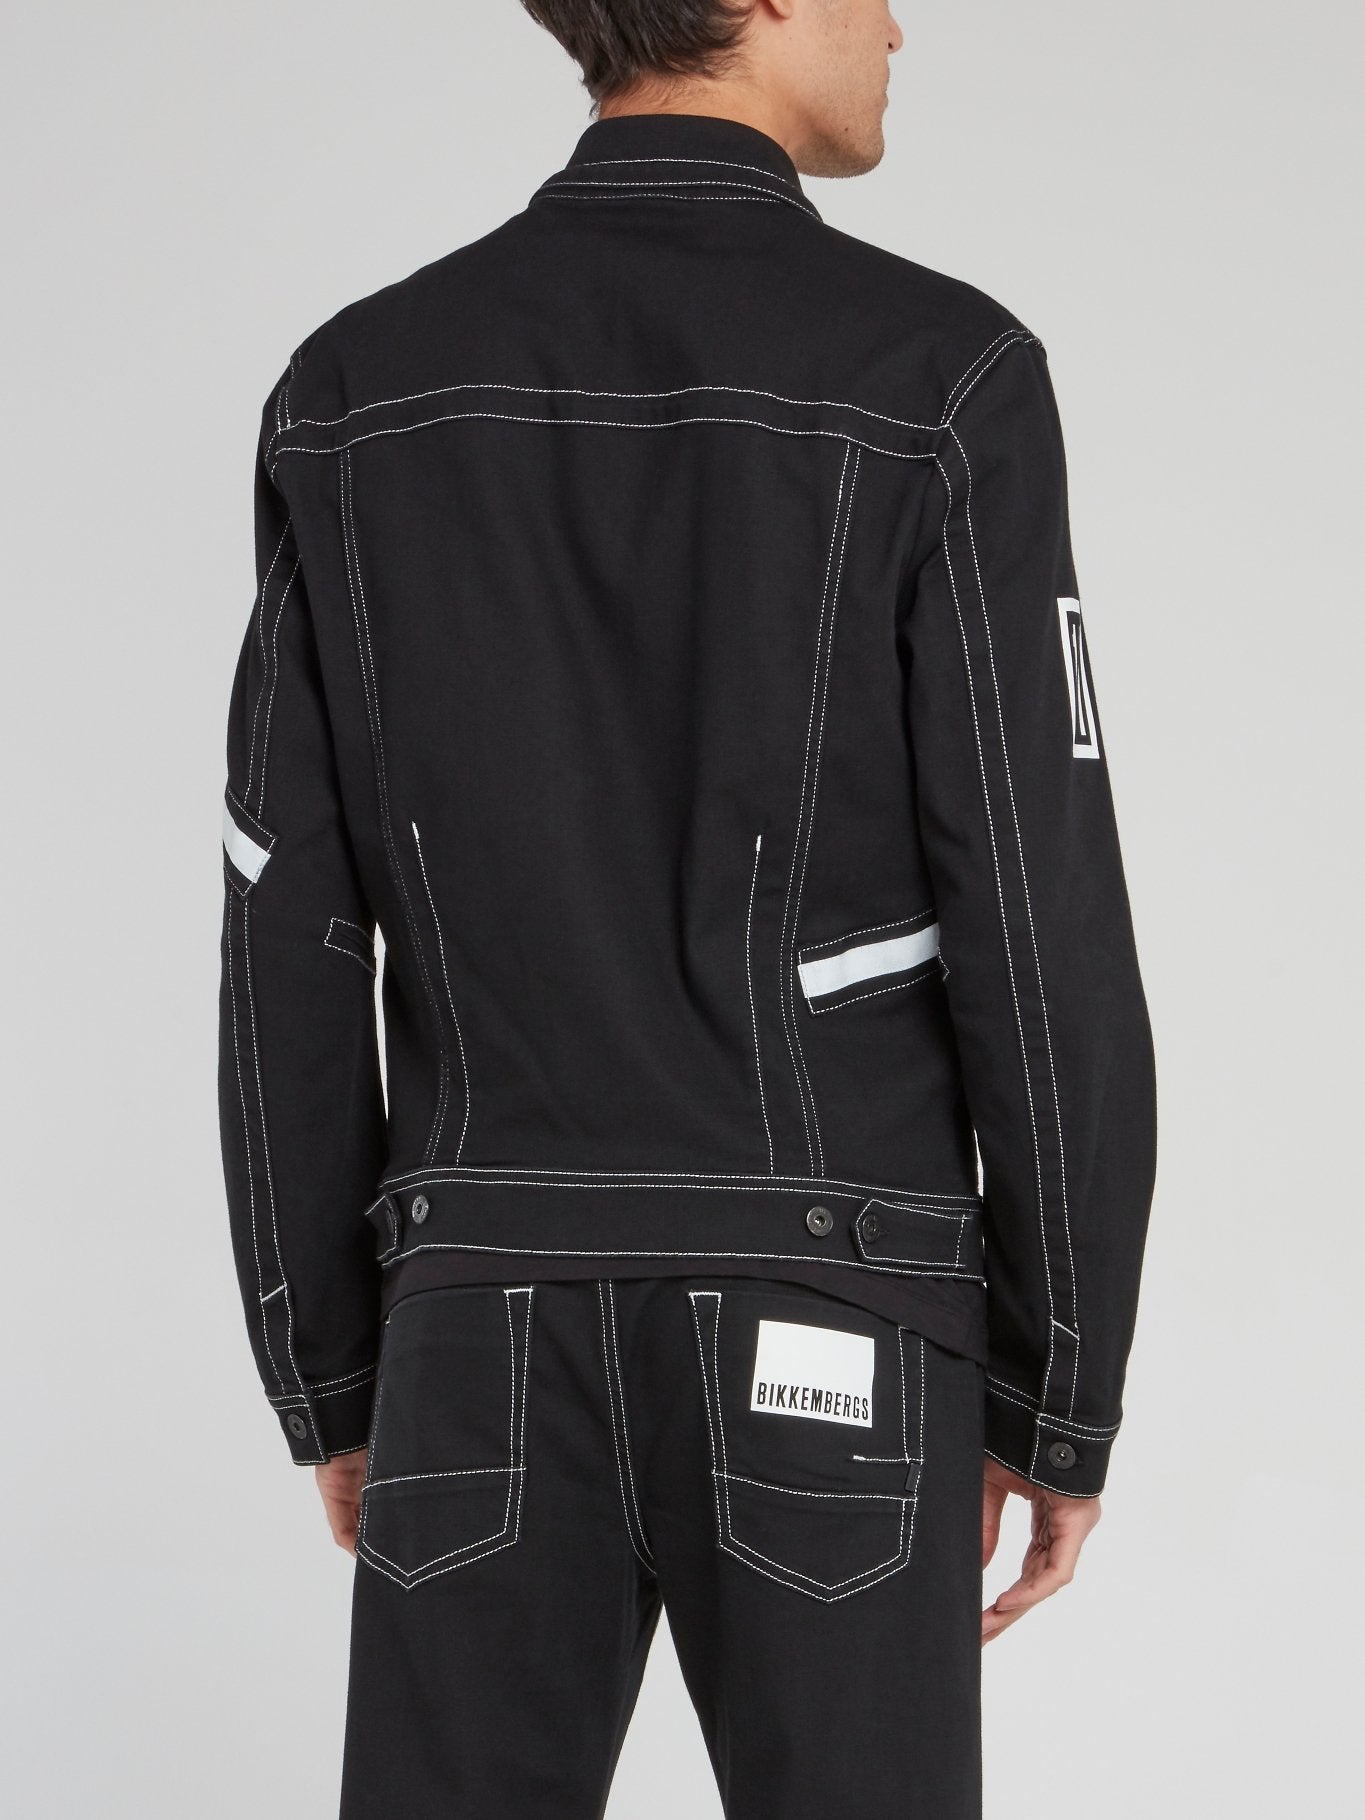 Black Drawstring Collared Jacket